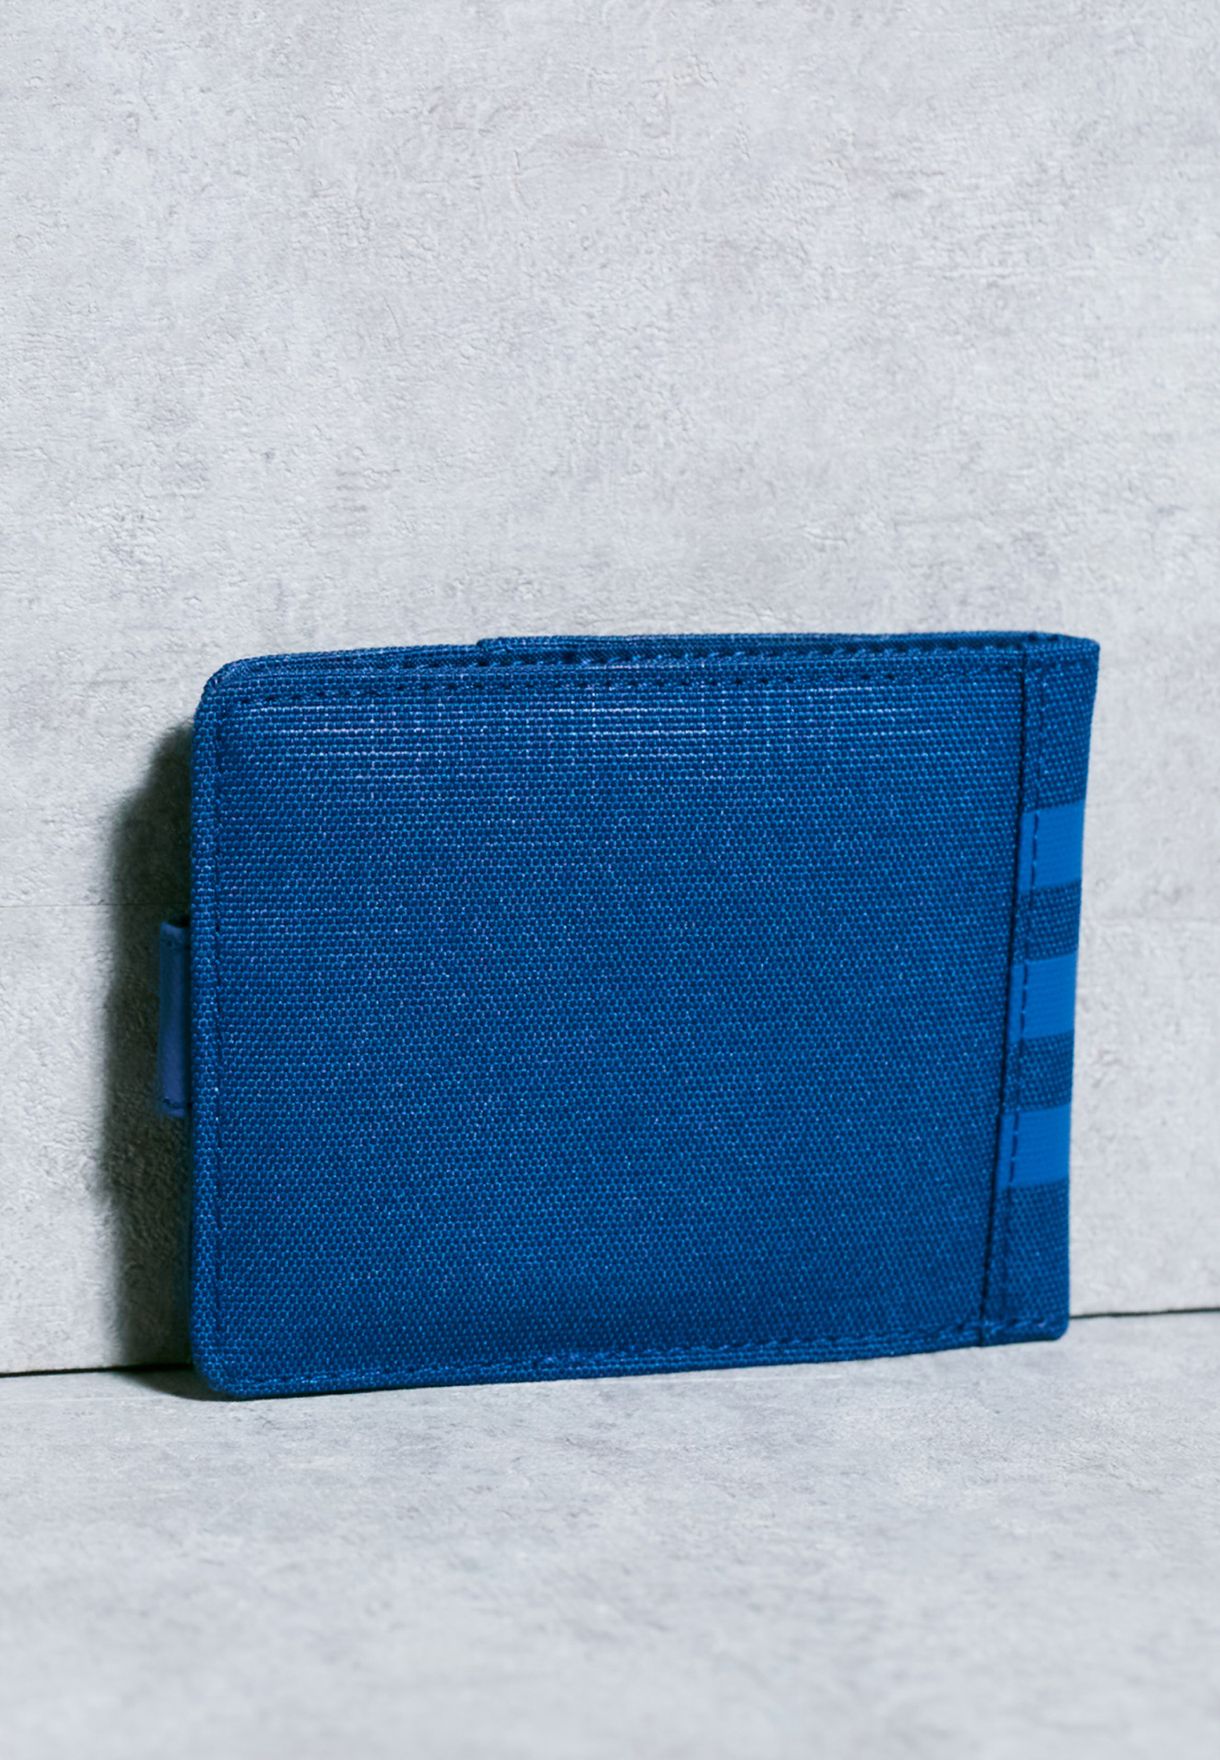 adidas 3s per wallet unisex mavi cüzdan ak0019